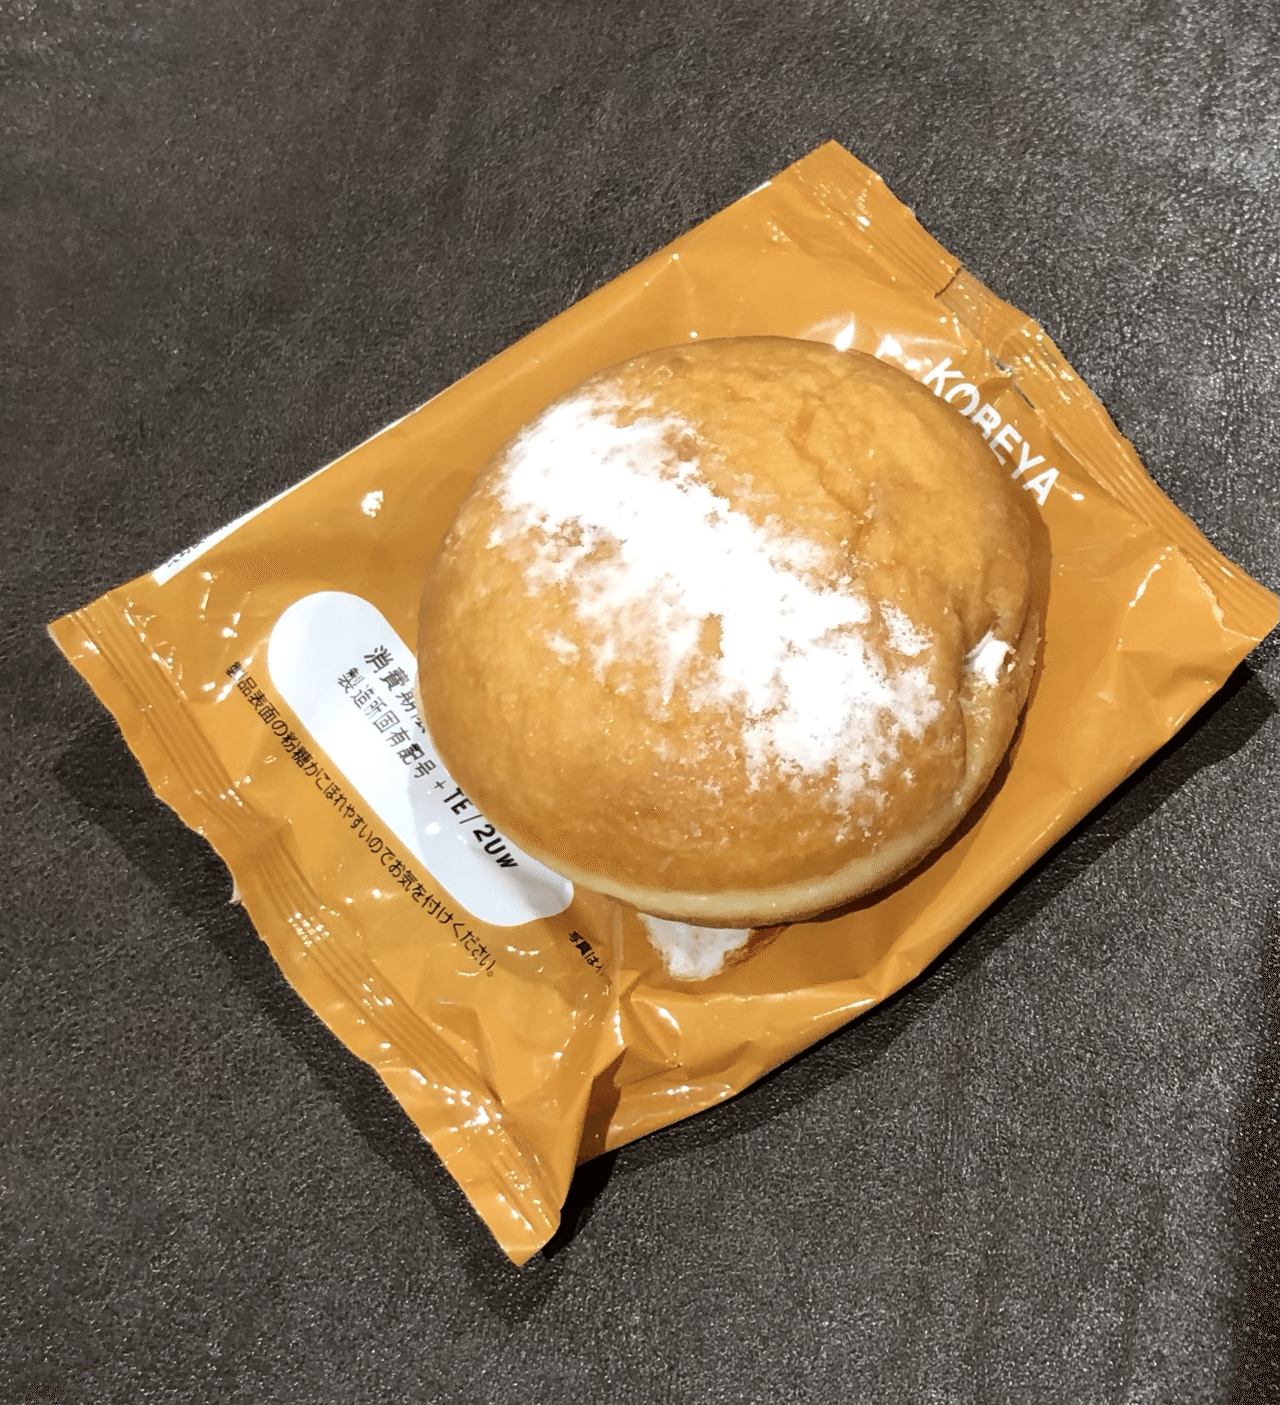 菓子パン紀21 神戸屋 コーヒーとホイップのダブルクリームドーナツ 熊の場所 Note